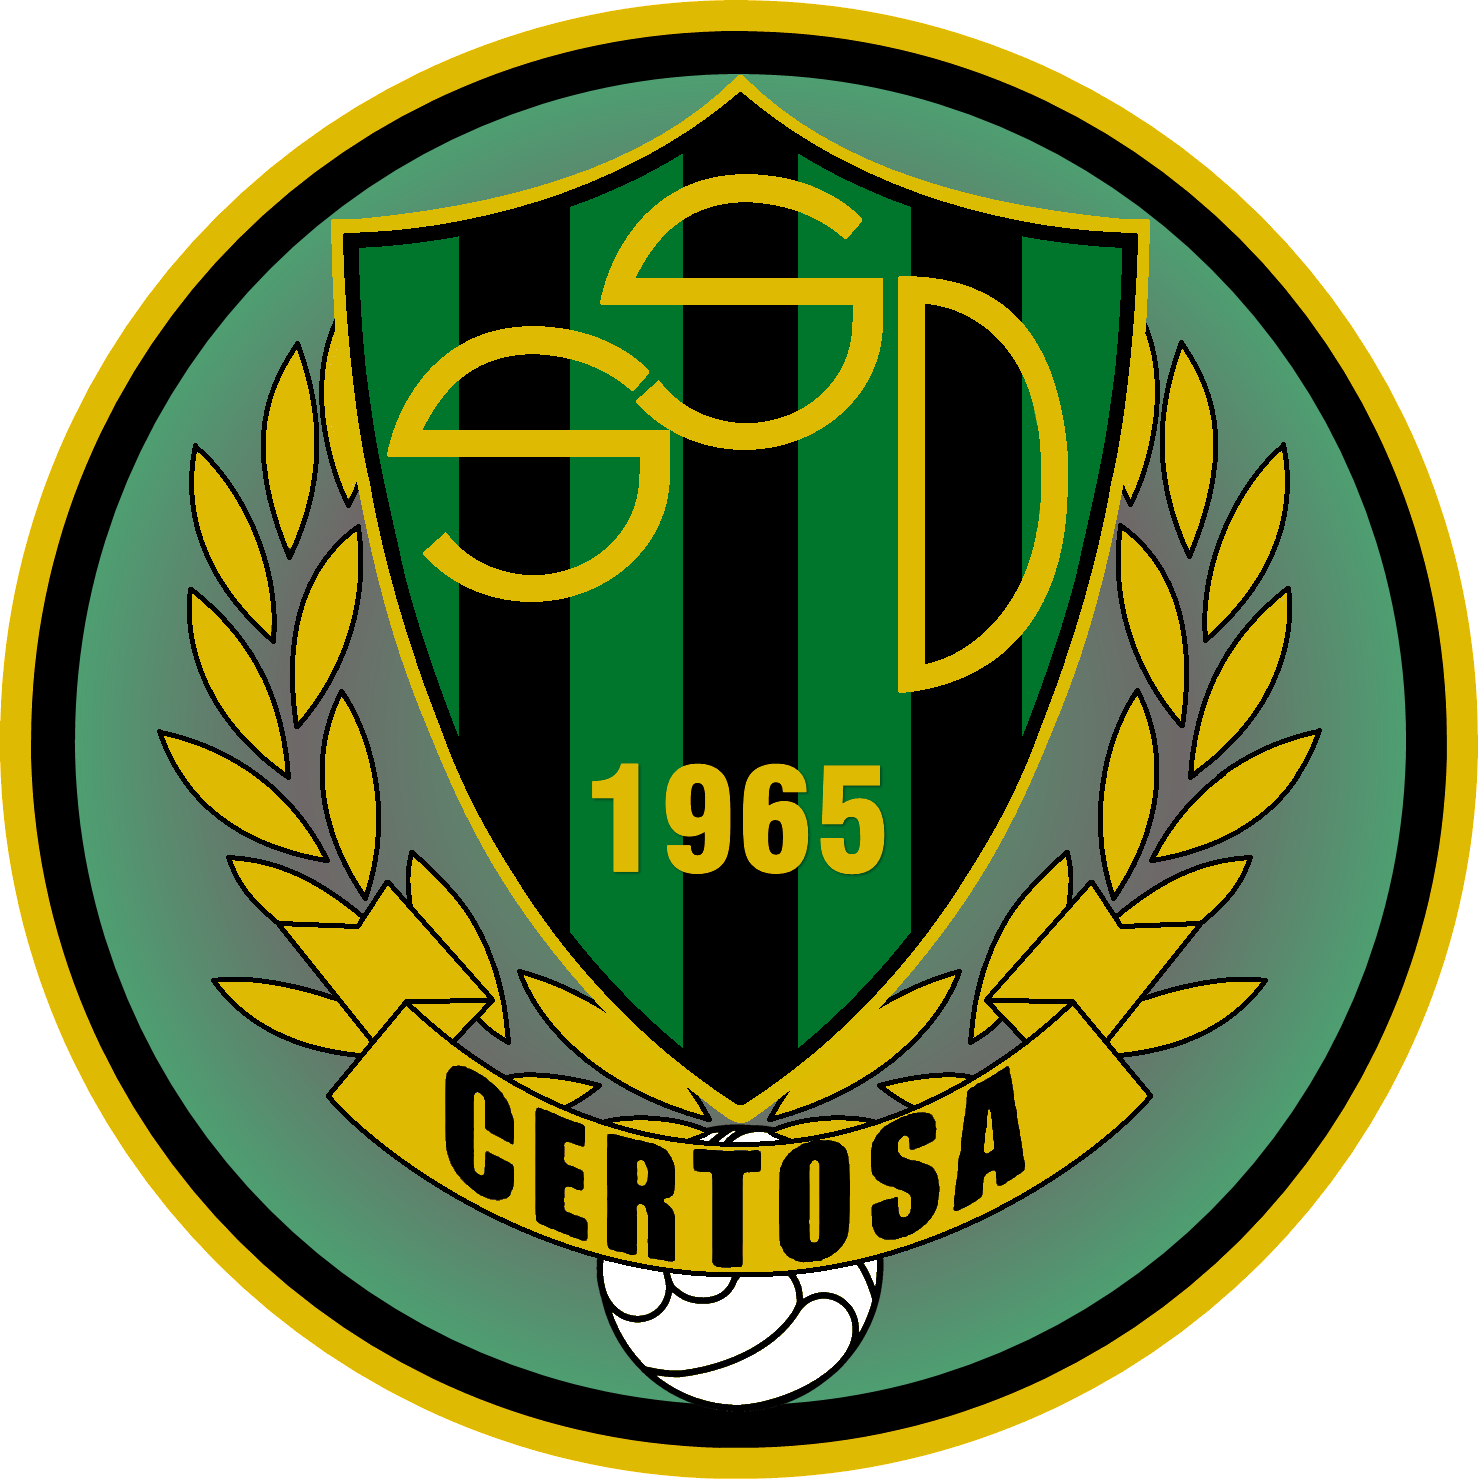 Wappen SSD Certosa